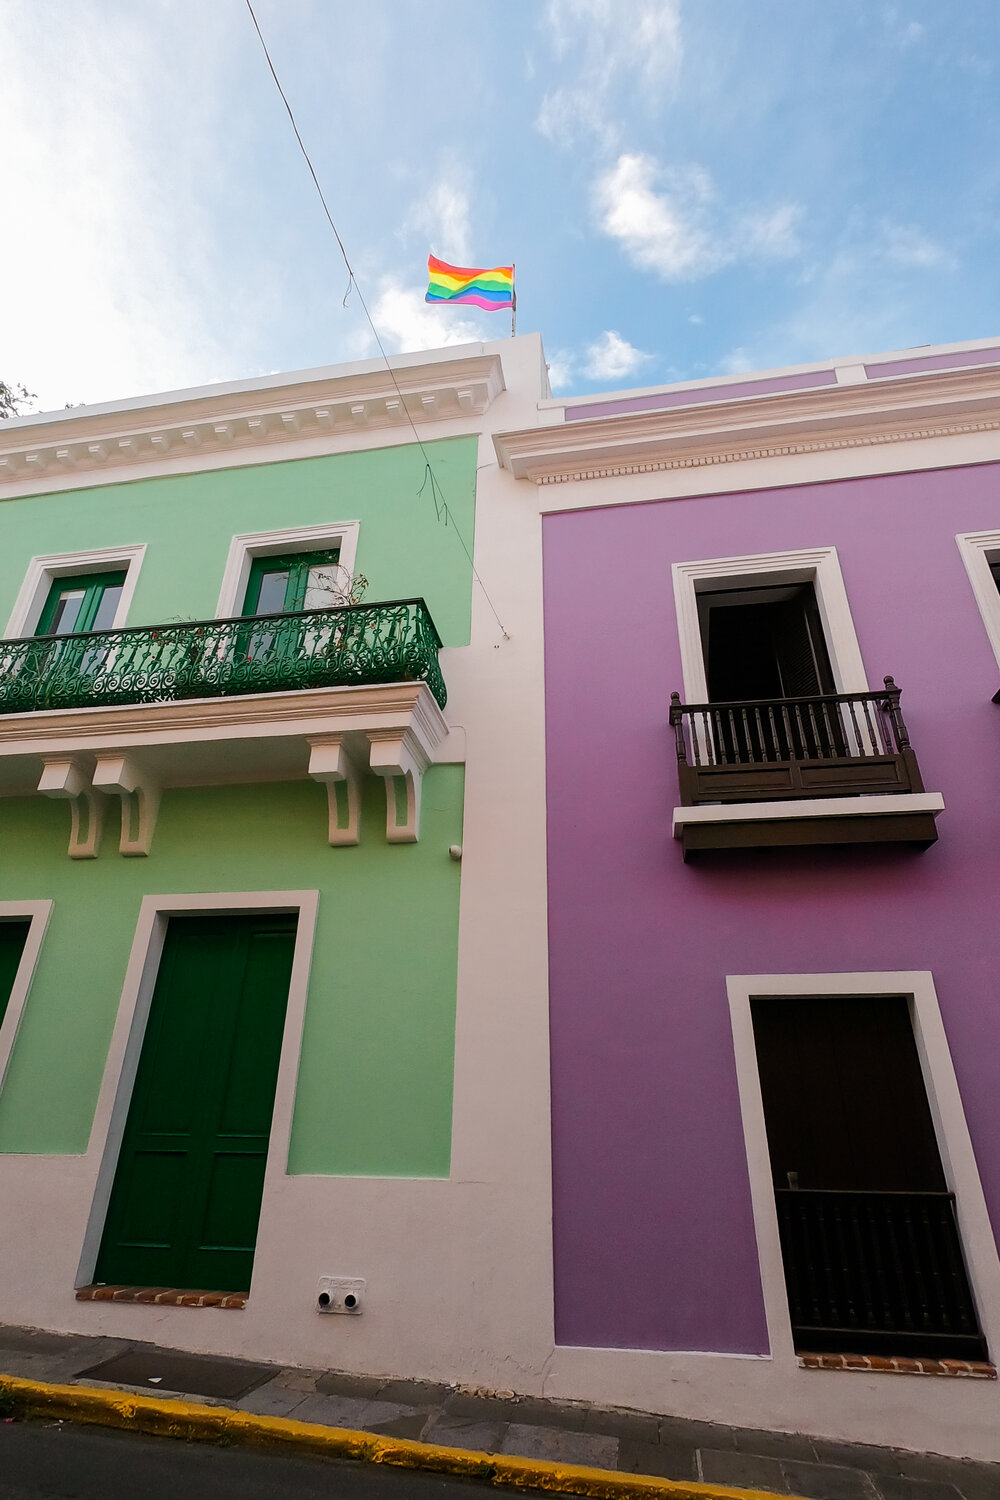 LesBiTravels-Queer-Travel-Honeymoon-Puerto-Rico-May-2019-126.jpg